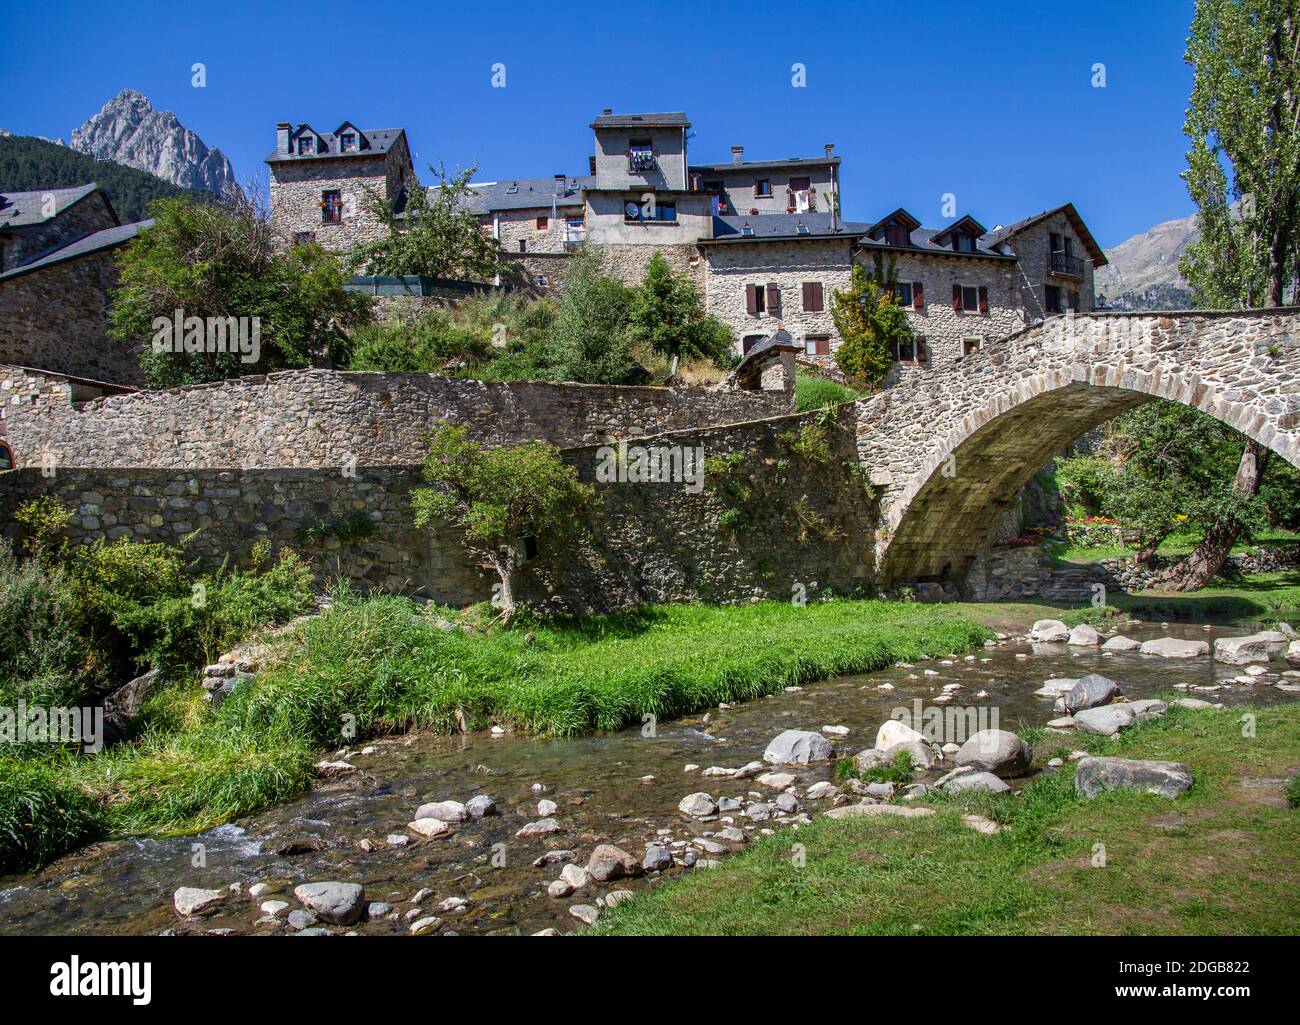 Village de montagne construit en pierre avec un pont sur lequel coule une rivière par un beau jour d'été, Sallent de Gallego, Huesca, Pyrénées Espagne, horizontal Banque D'Images